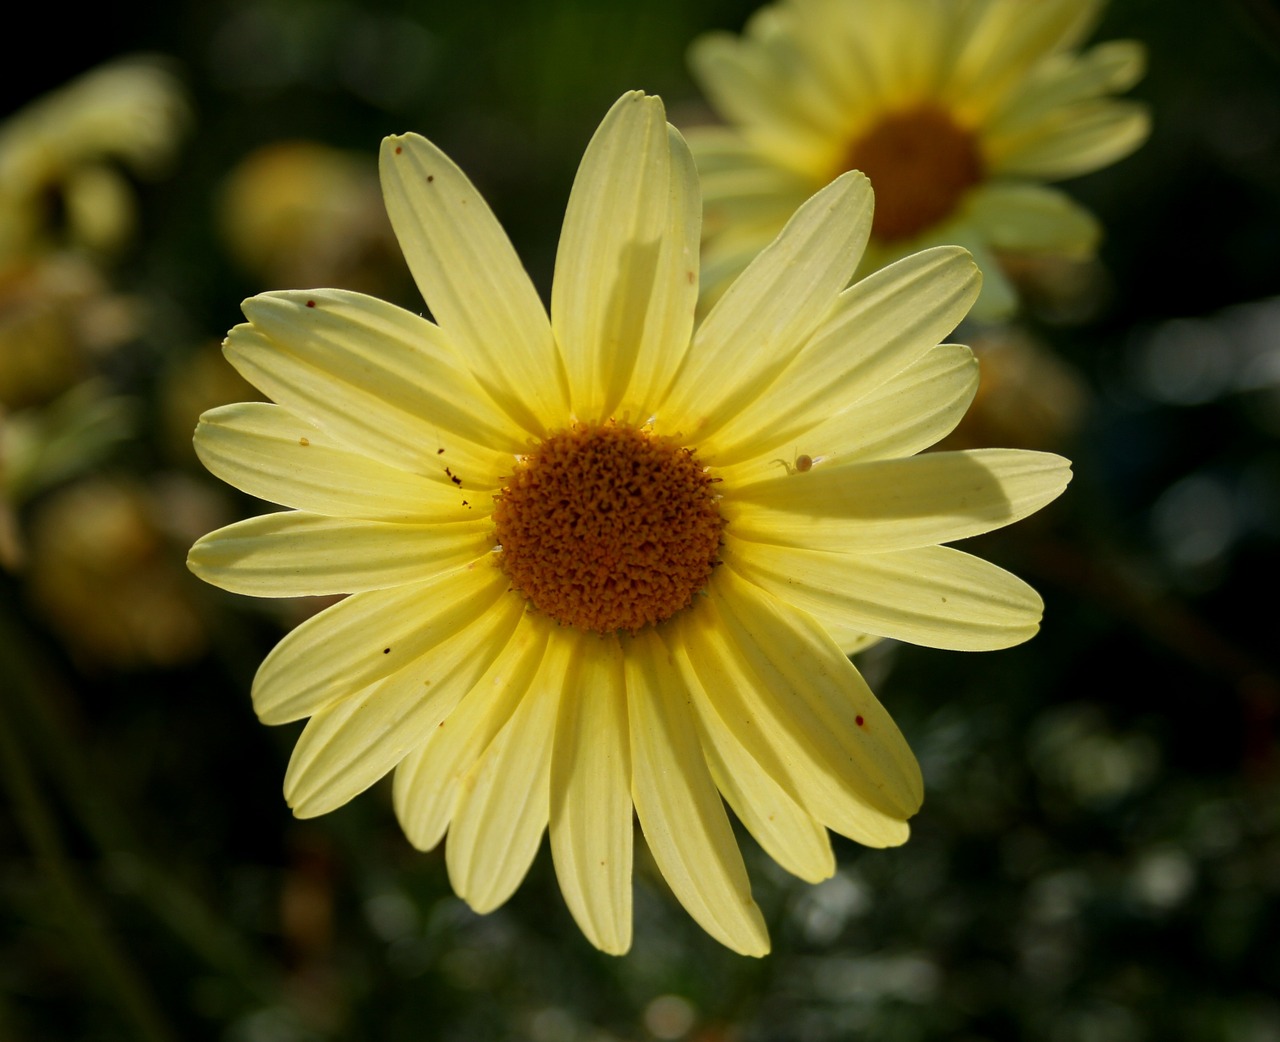 daisy soft yellow petals free photo